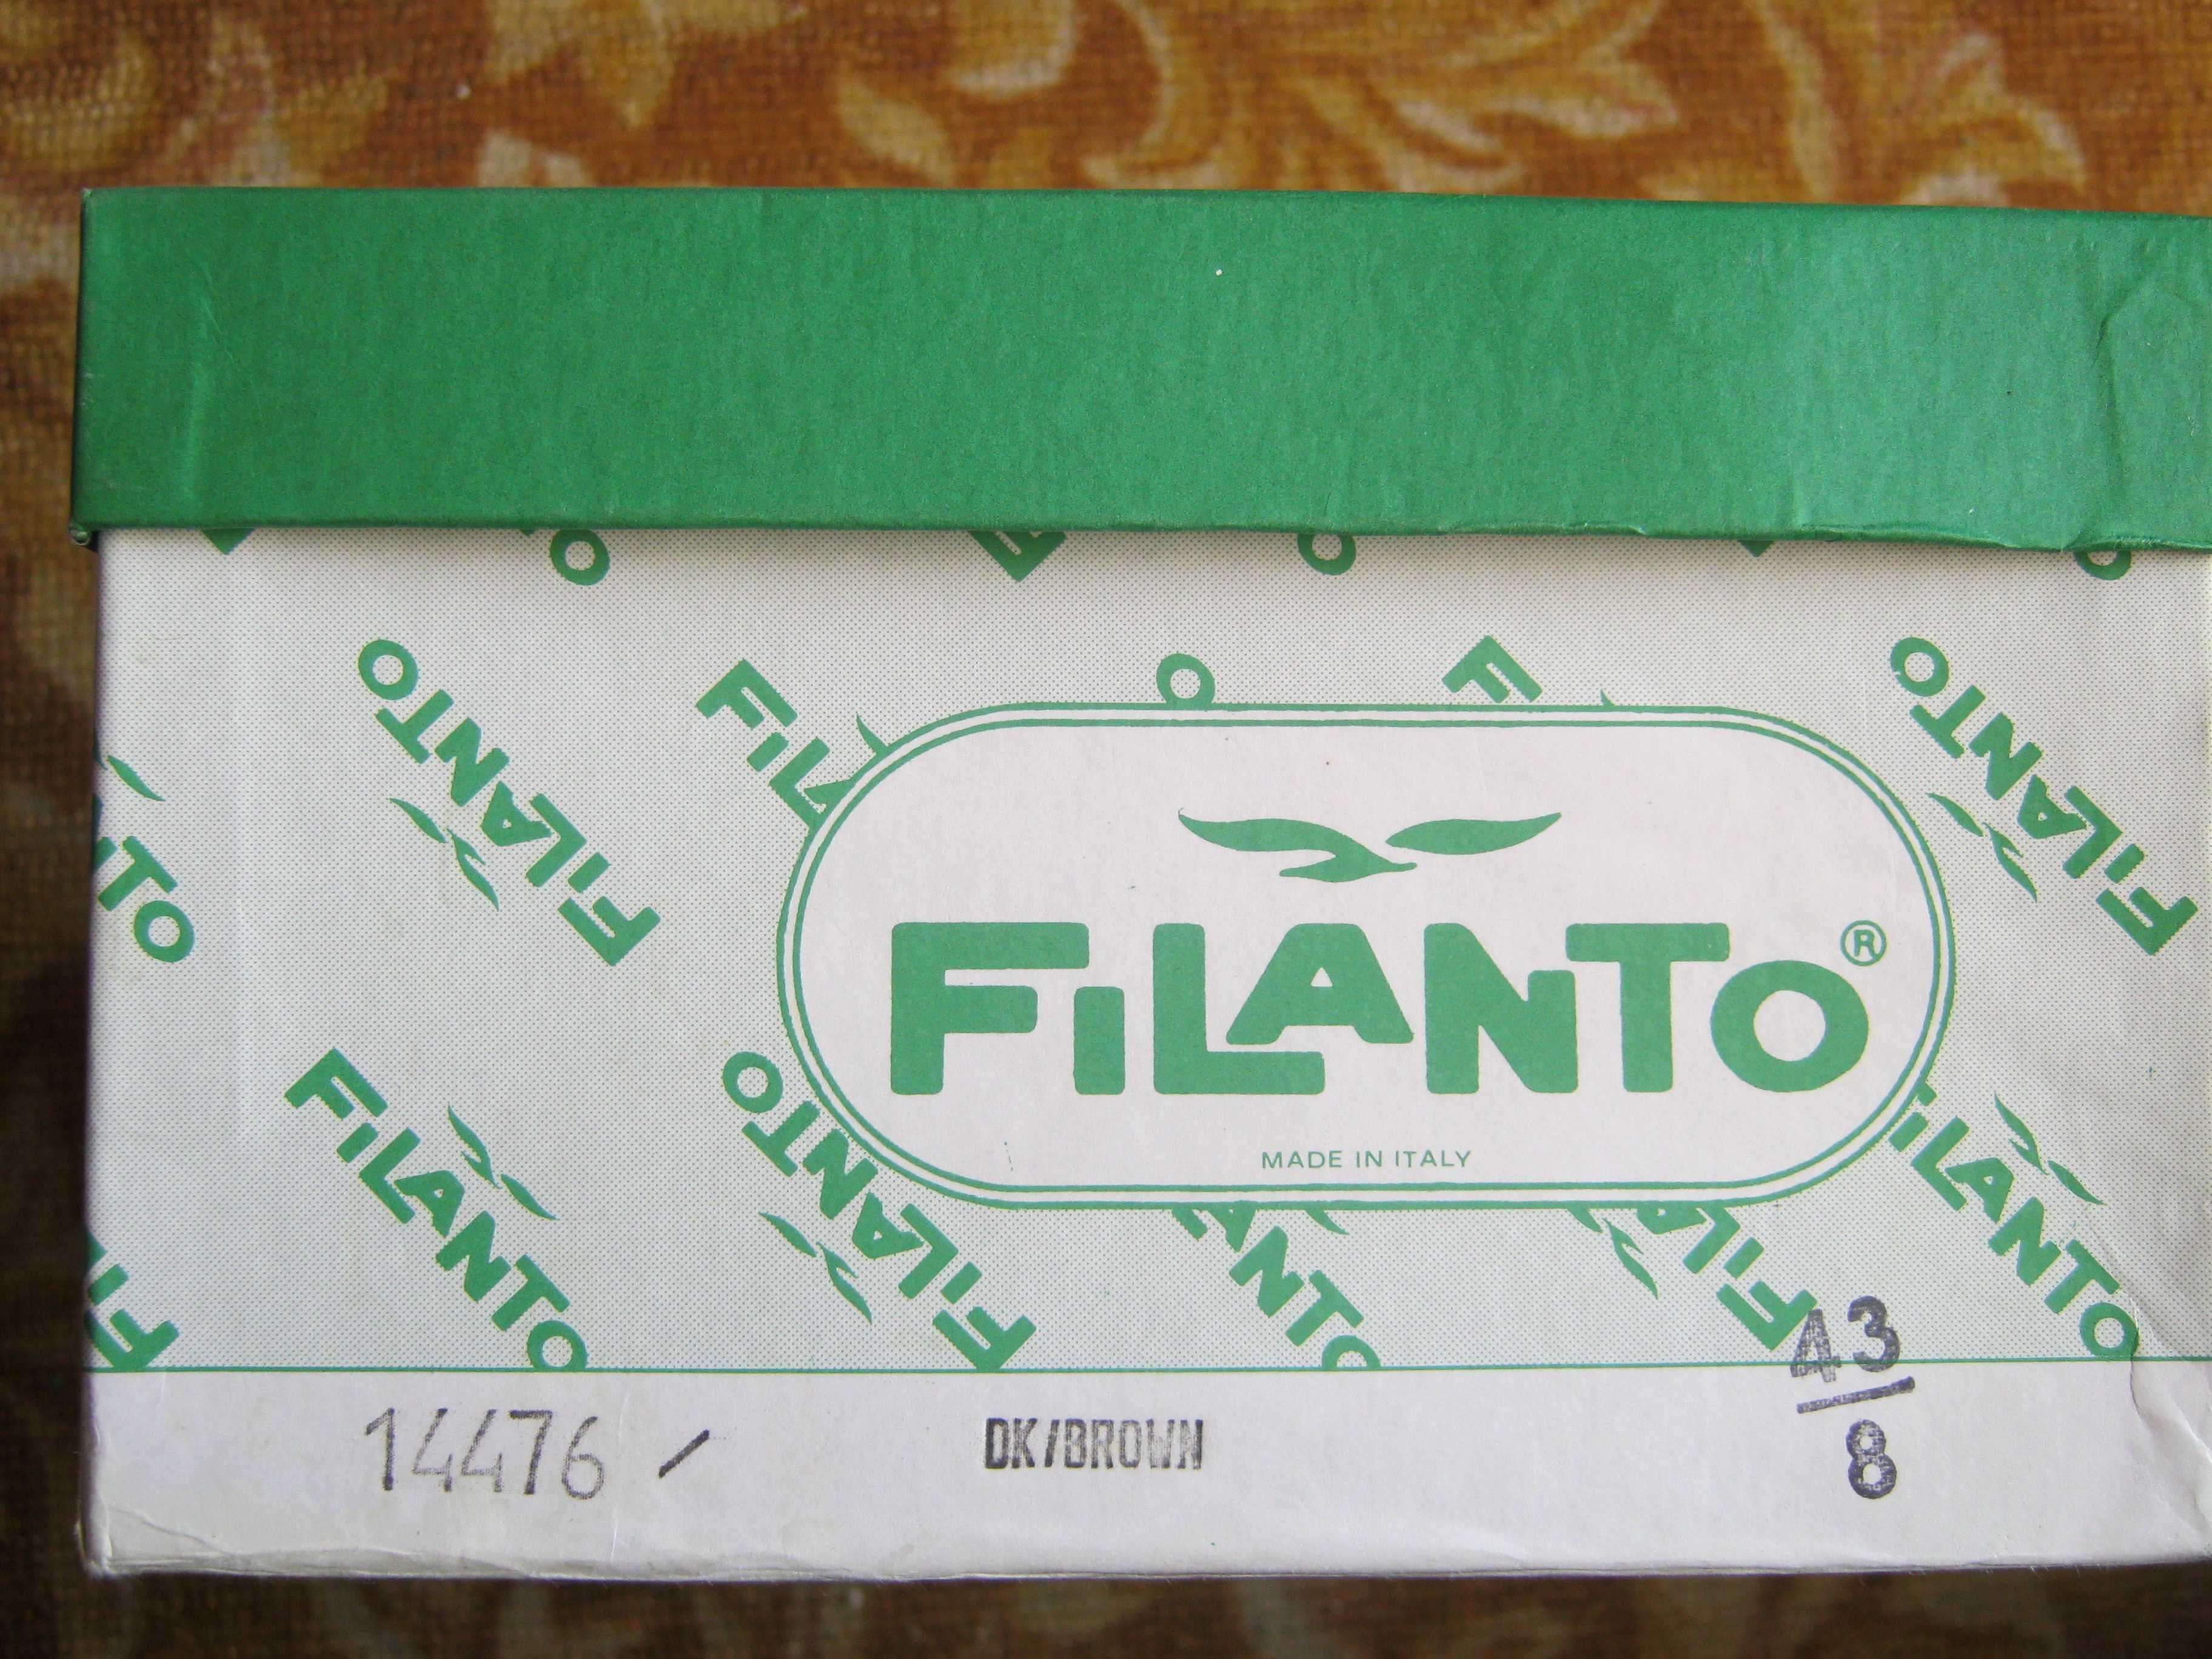 Туфли кожаные, изготовлены в Италии фирма Filanto, размер 43